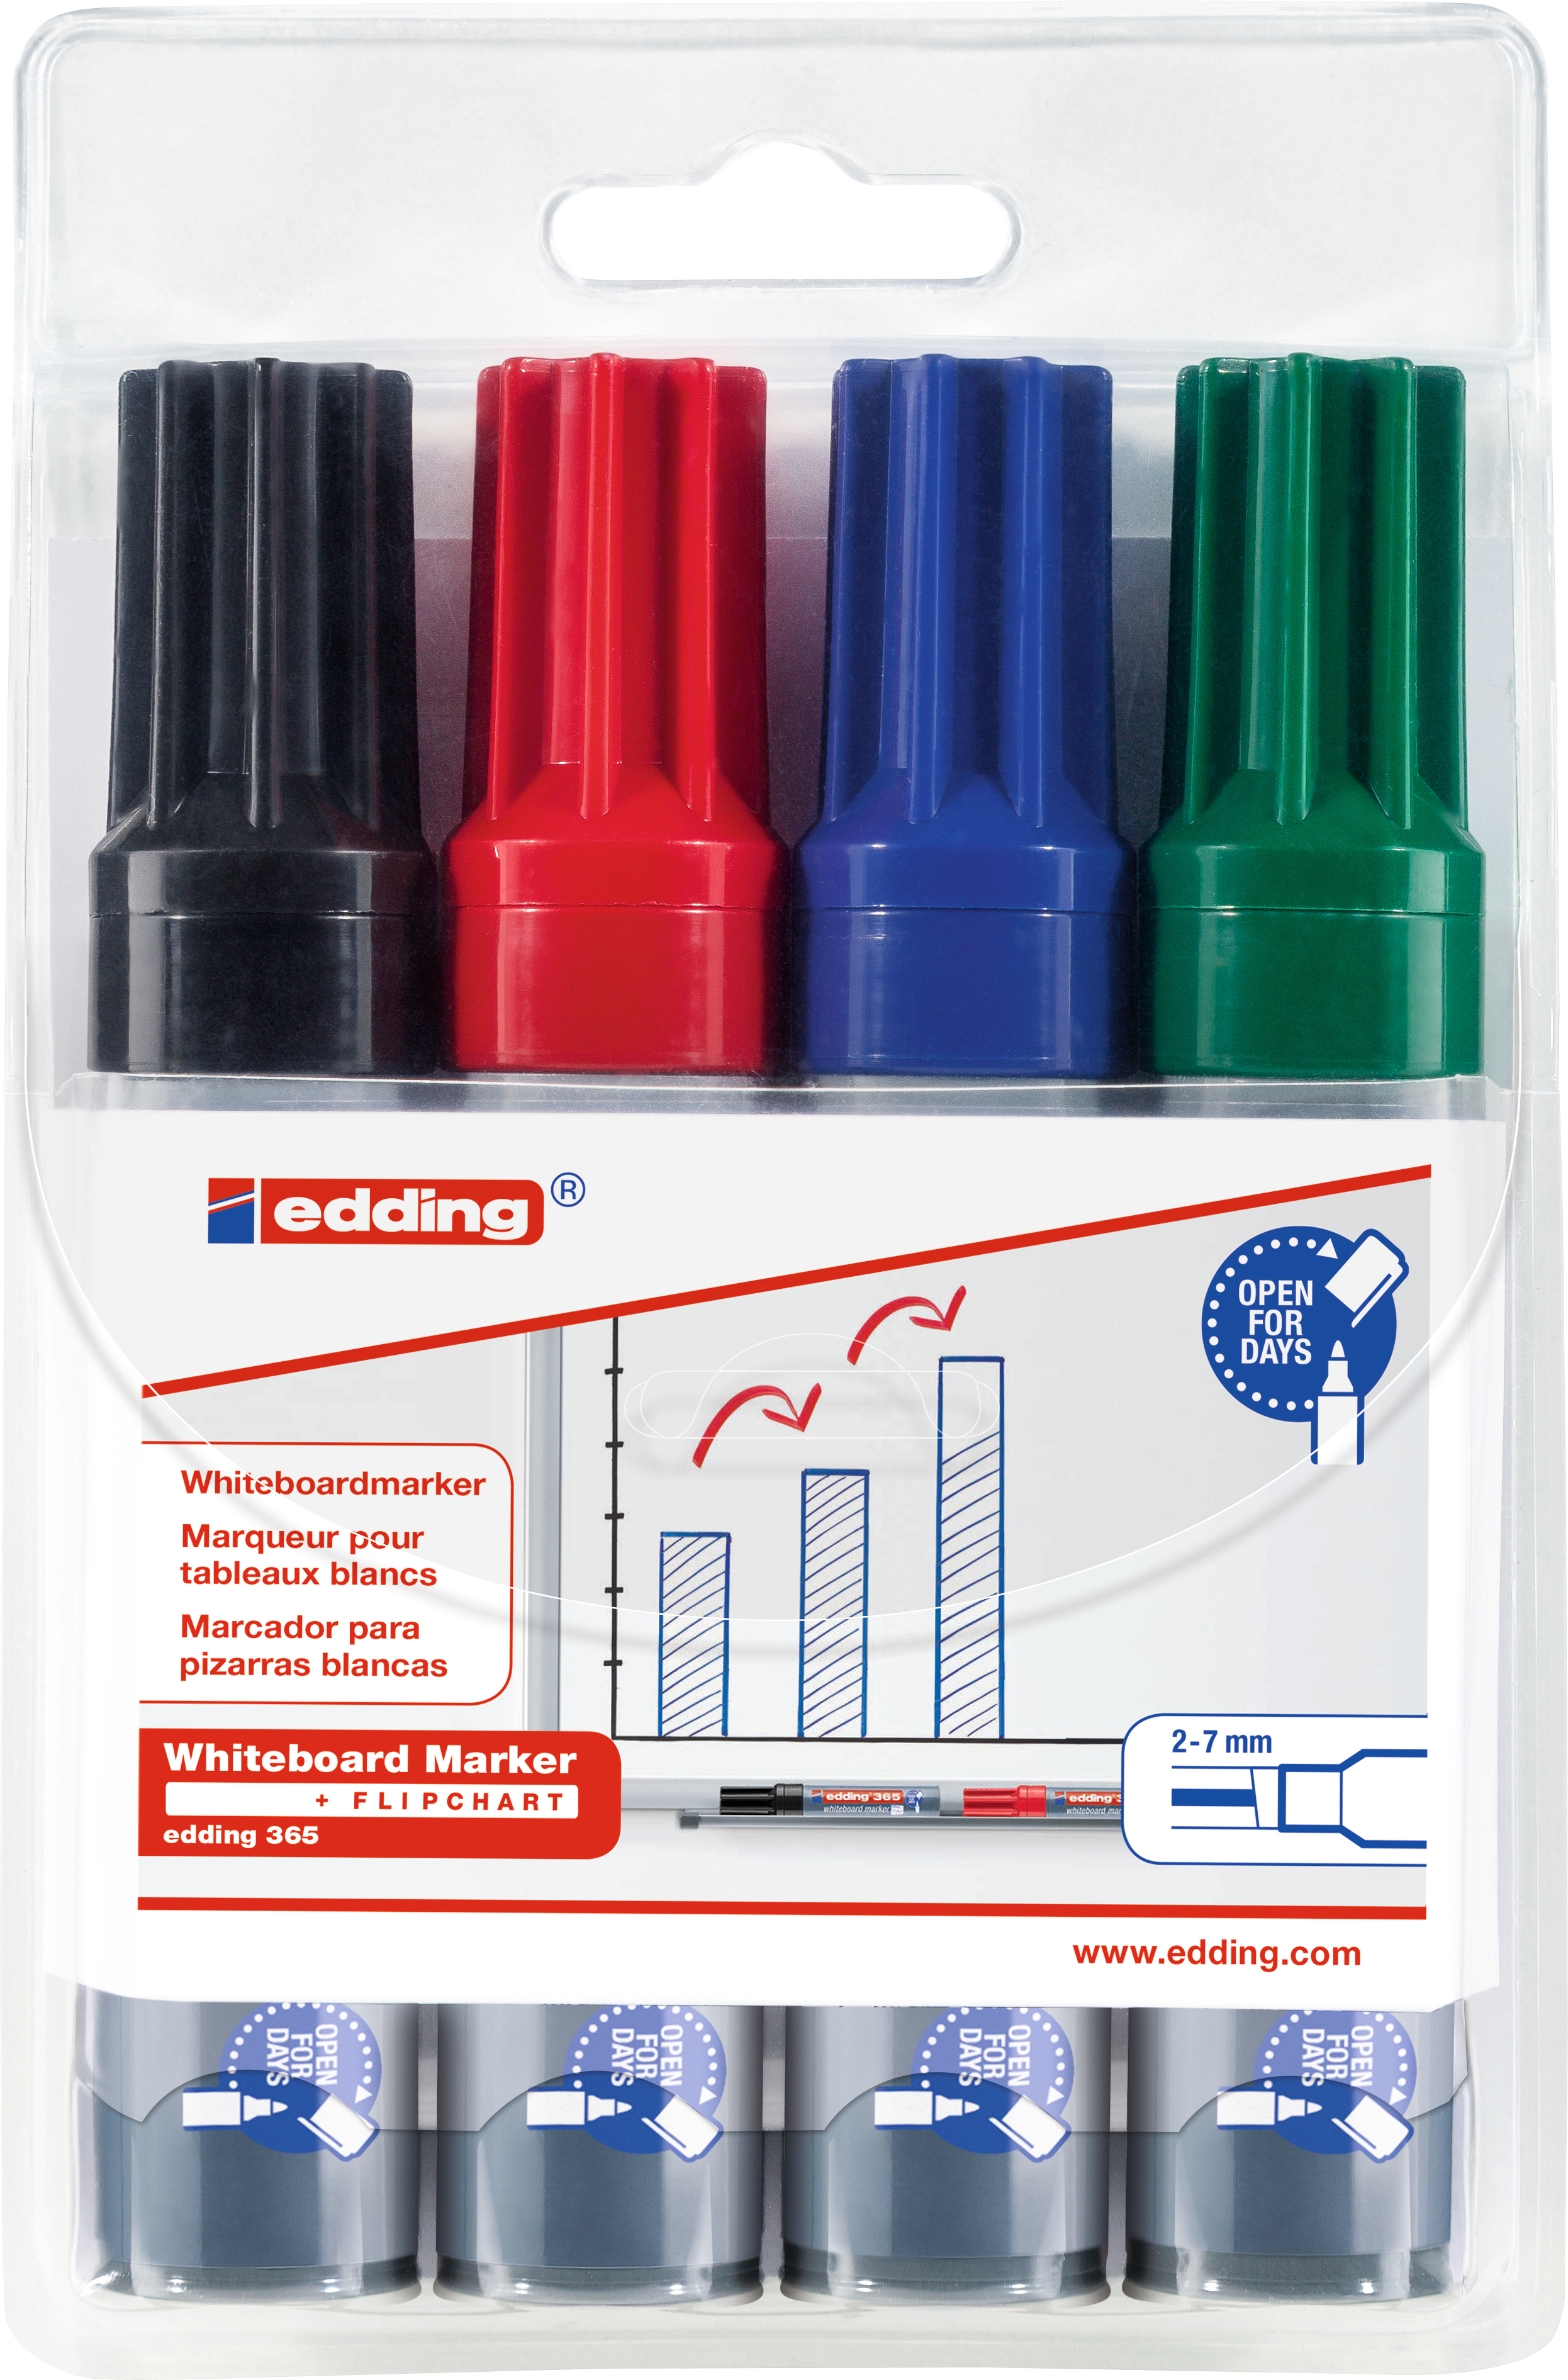 EDDING Whiteboard Marker 365 2-7mm 365-E4 noir,rouge,bleu,vert 4 pcs.